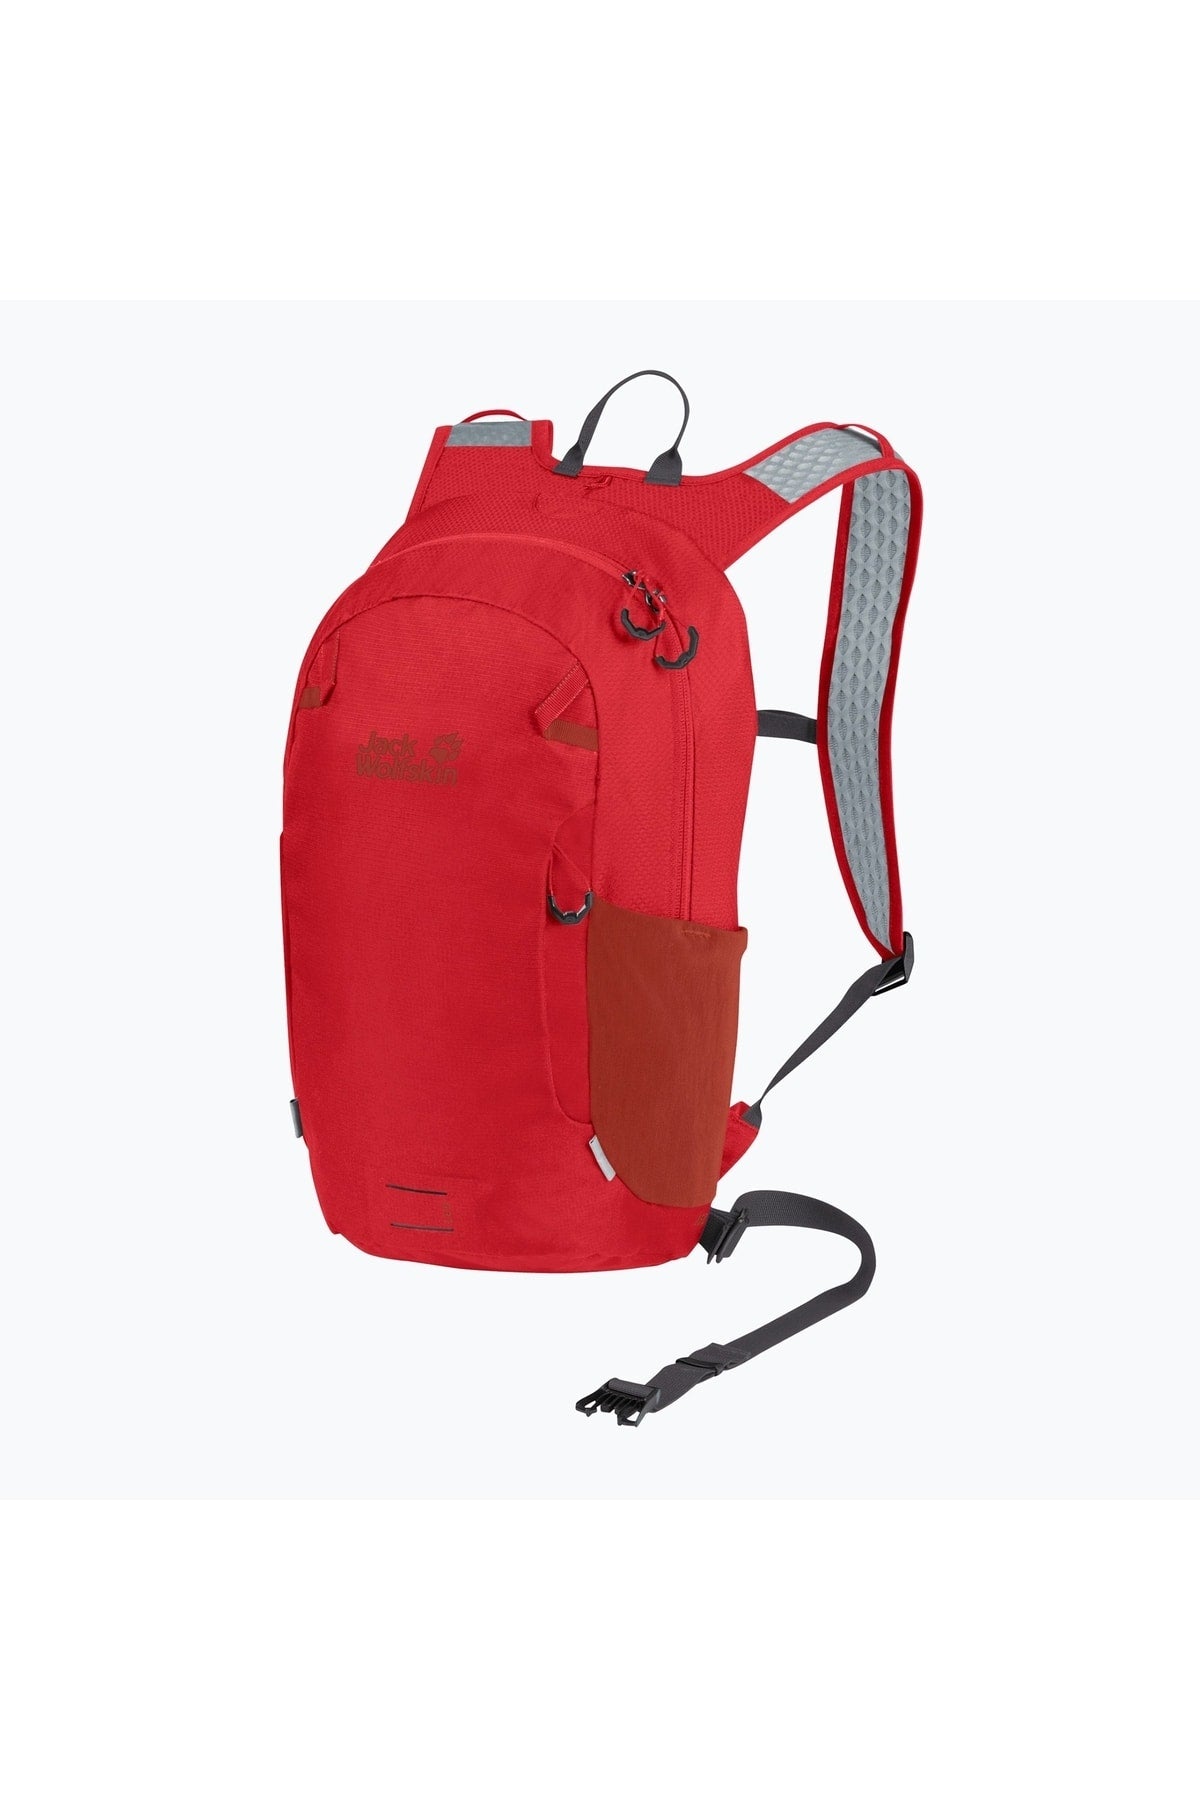 Velo Jam 15 Unisex Red Backpack 2010291-2206